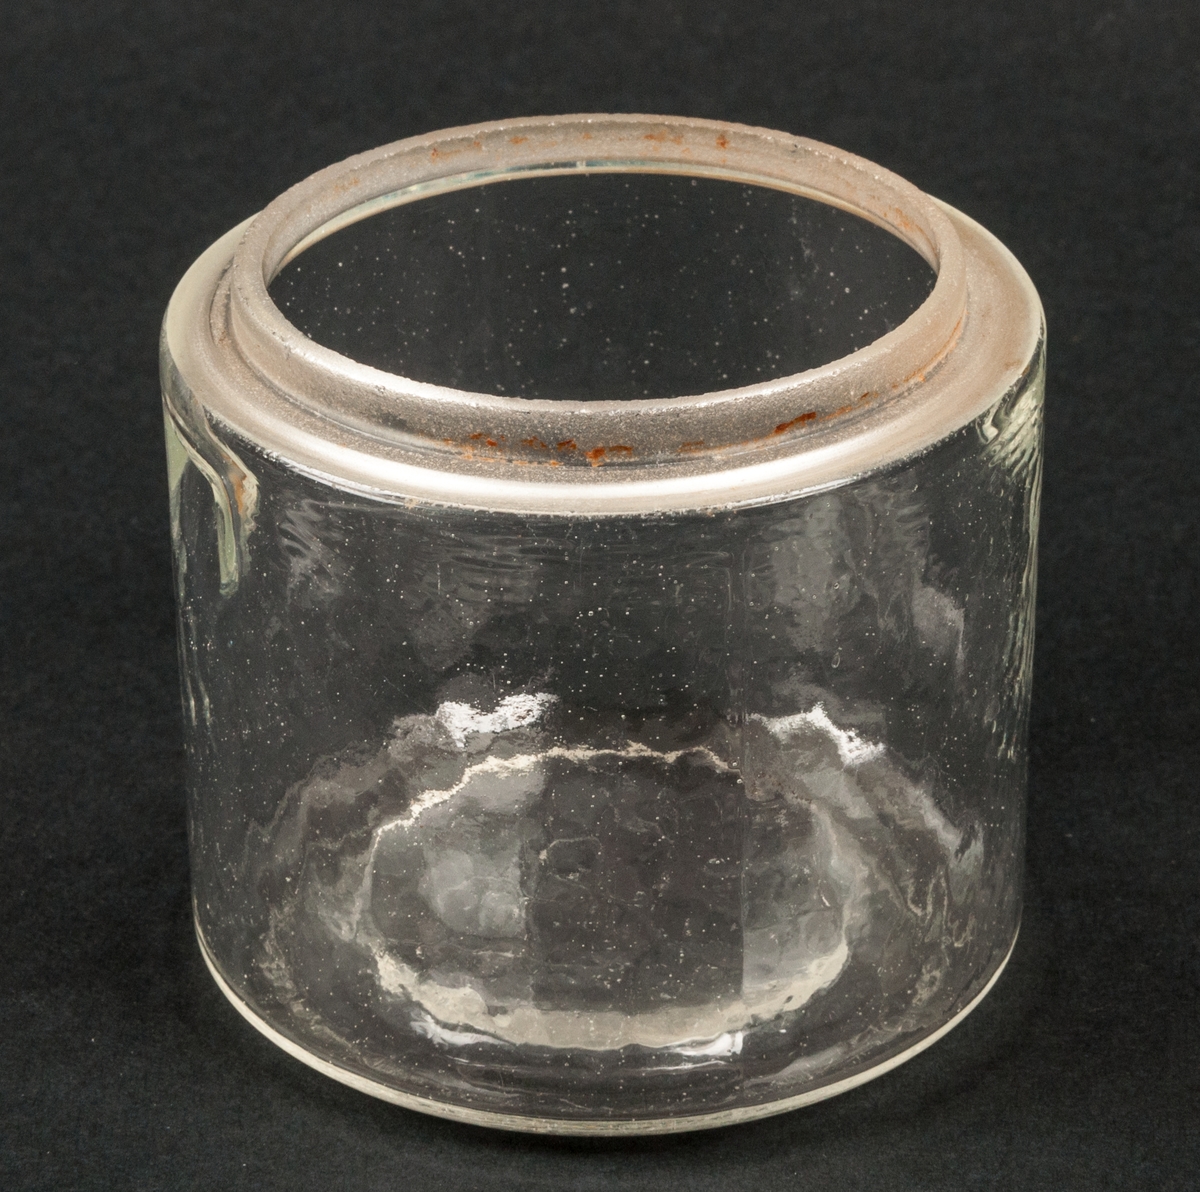 Konserveringsglas, 1/4 liter, med lock.
Glas. Öjämn yta. 2 fördjupningar upptill på sidan. På undersidan märkt i relief "1/4 Ltr".